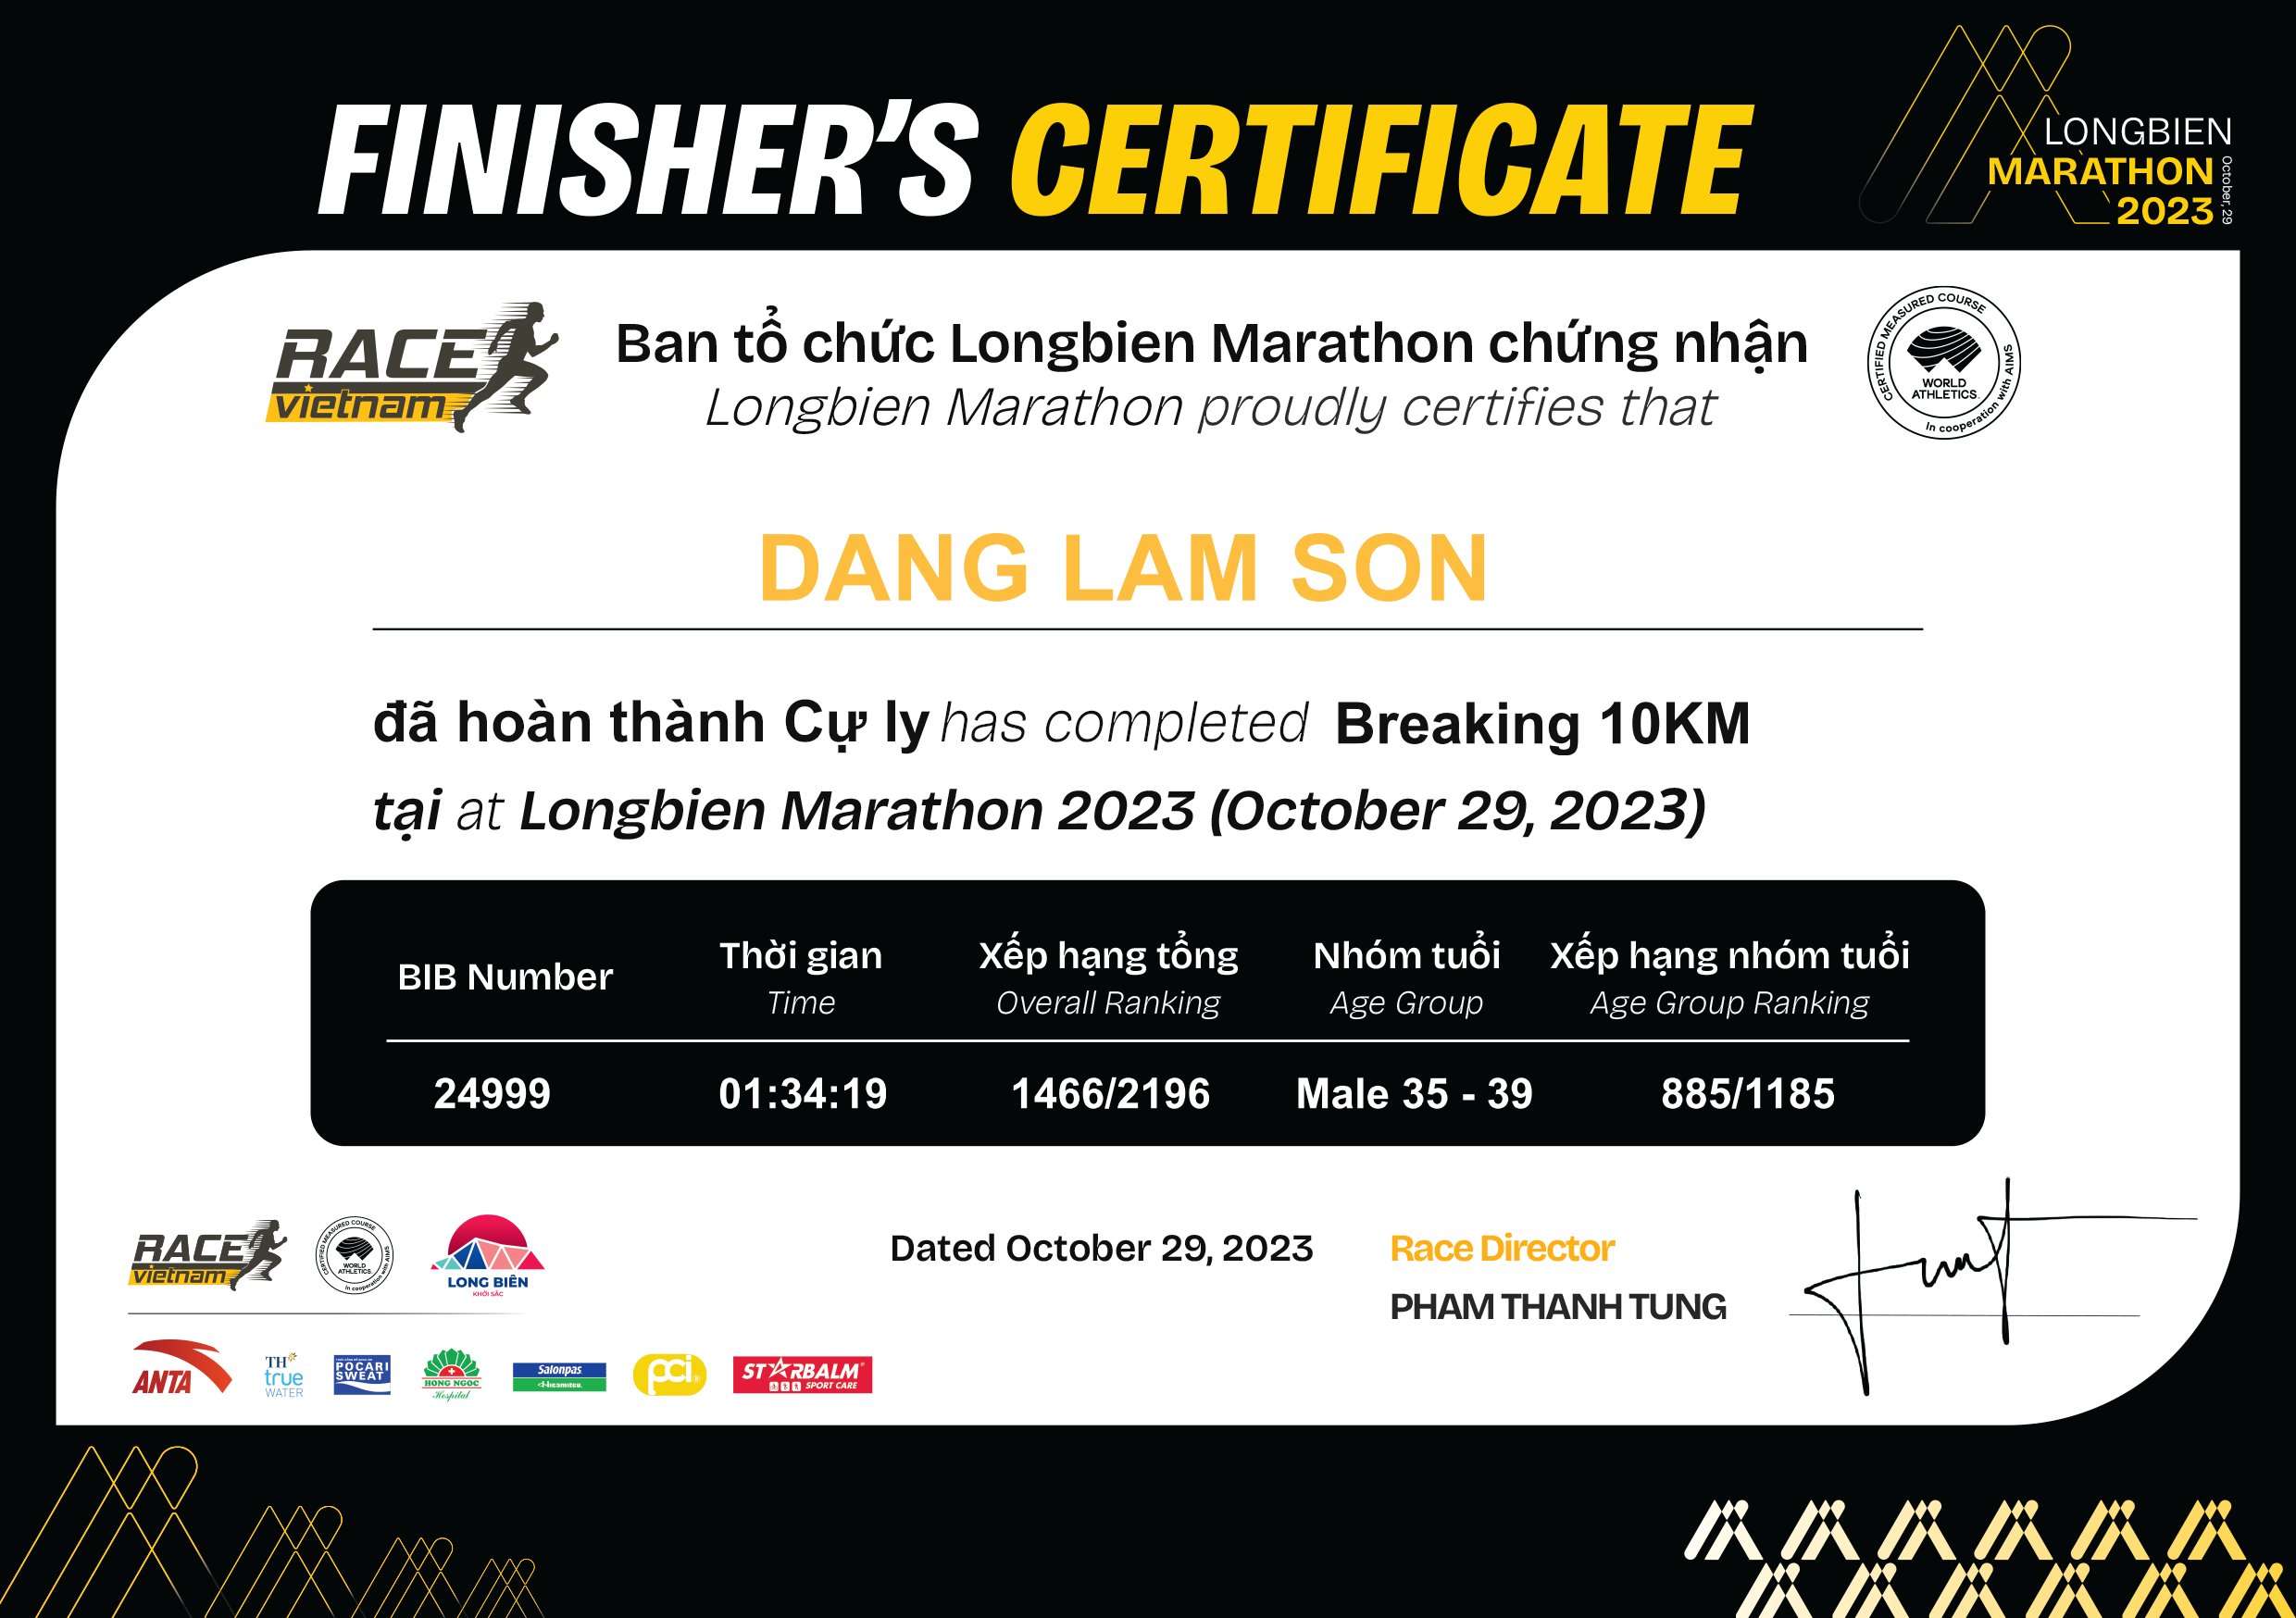 24999 - Dang Lam Son